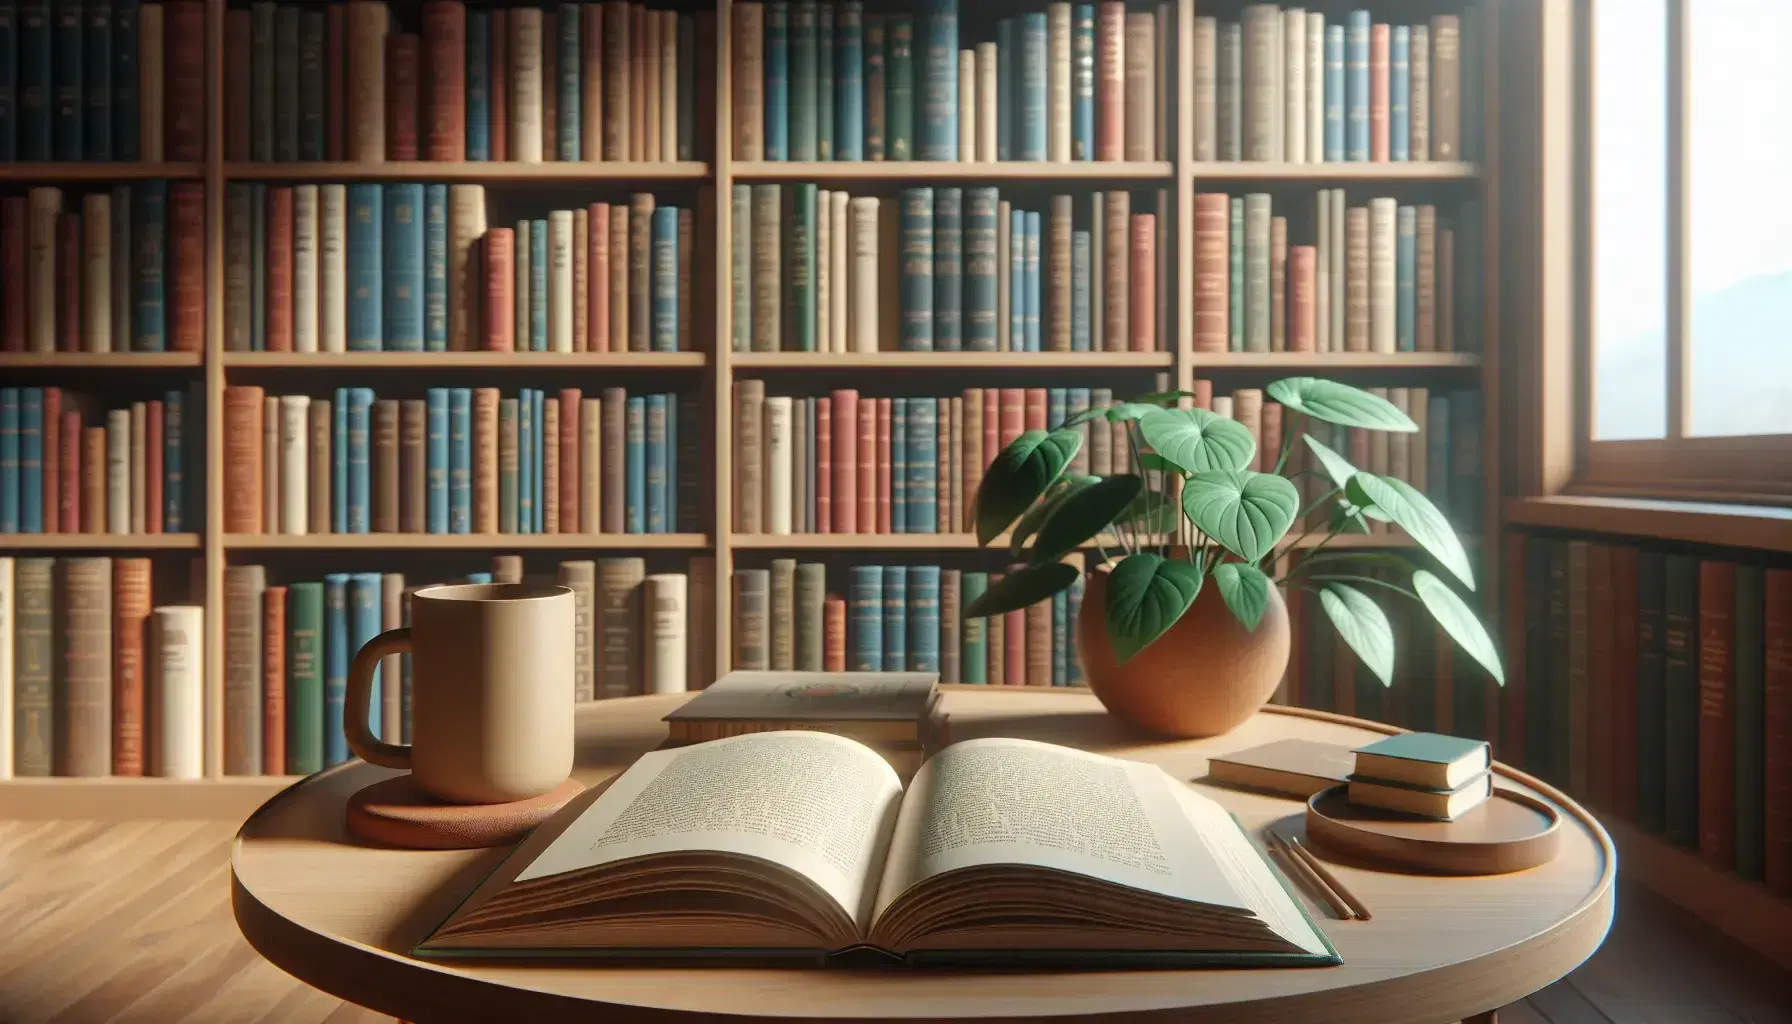 Mesa de madera con libro abierto sin texto visible, taza de café y planta, estantes con libros desenfocados al fondo en ambiente de biblioteca tranquilo.